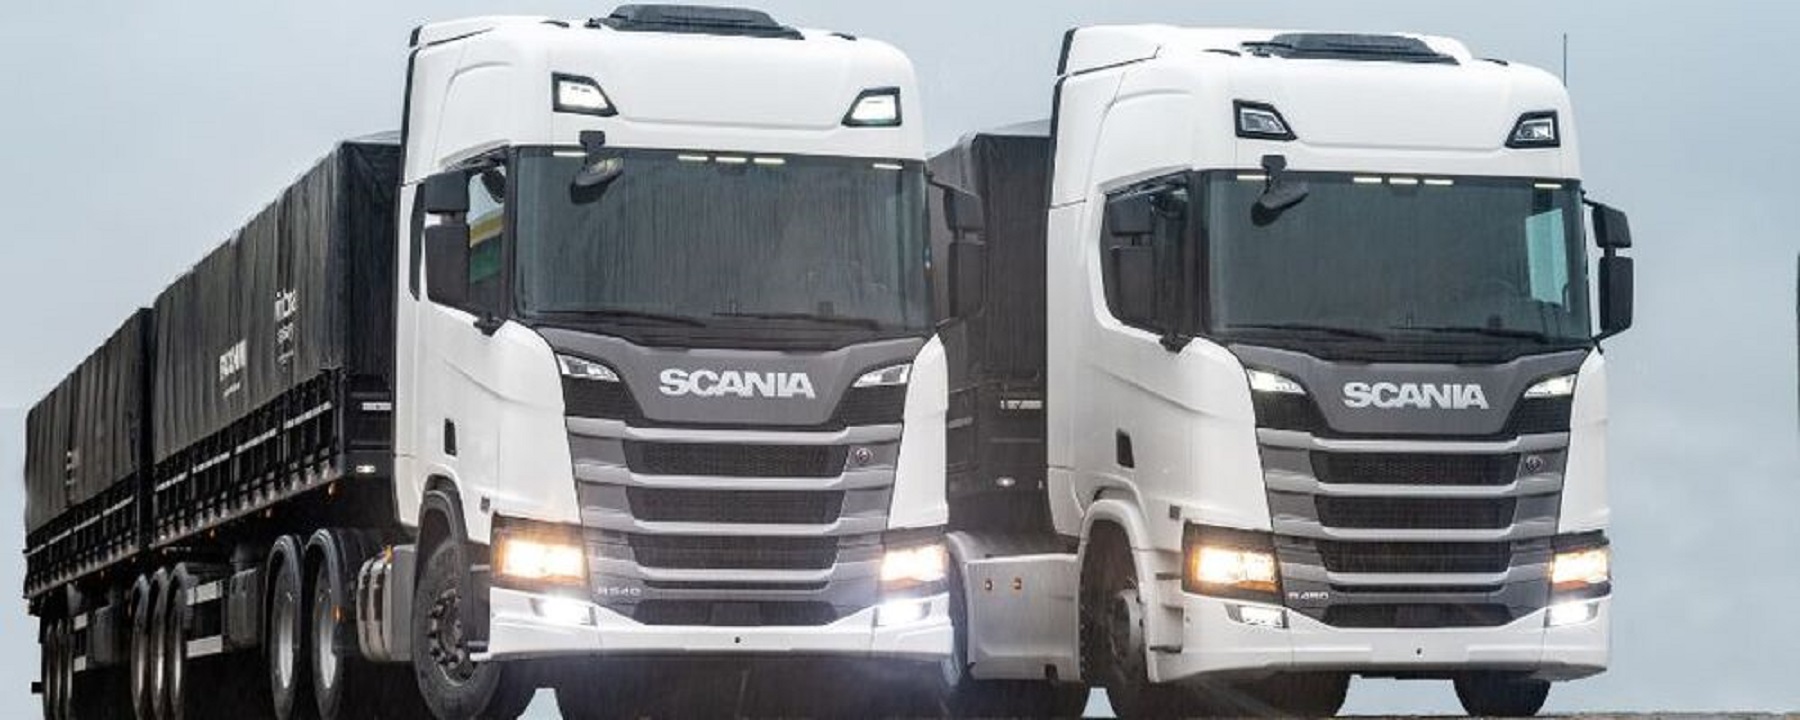 Scania completa 66 anos e vai presentar fãs com visita em fábrica